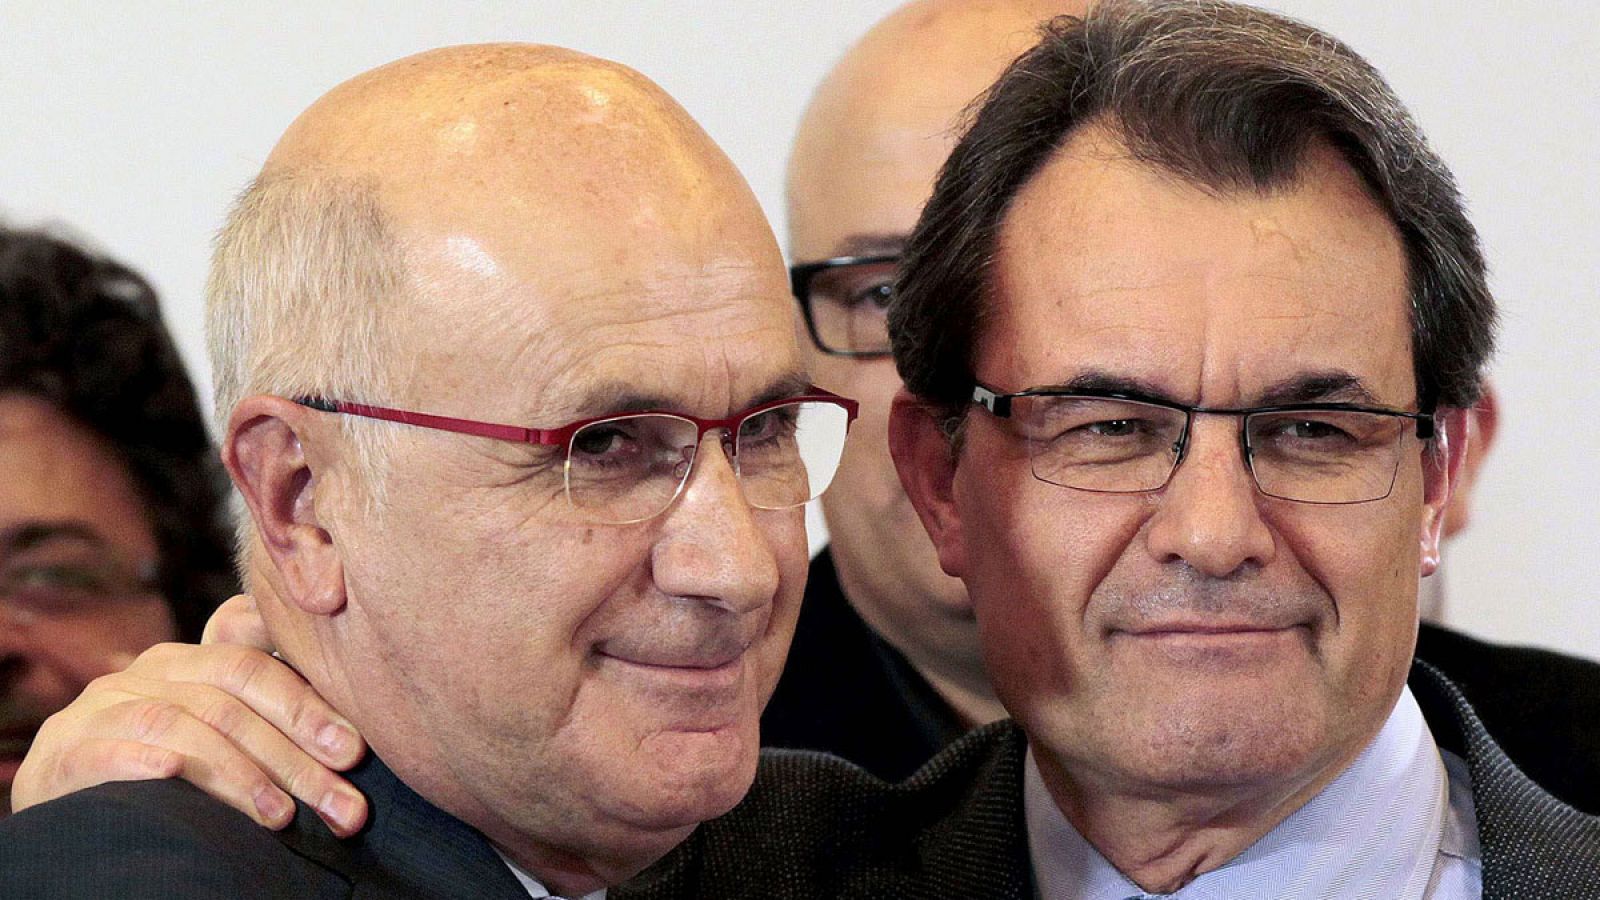 En la imagen, el líder de UDC, Josep Antoni Duran i Lleida junto con el presidente de la Generalitat de Cataluña, Artur Mas